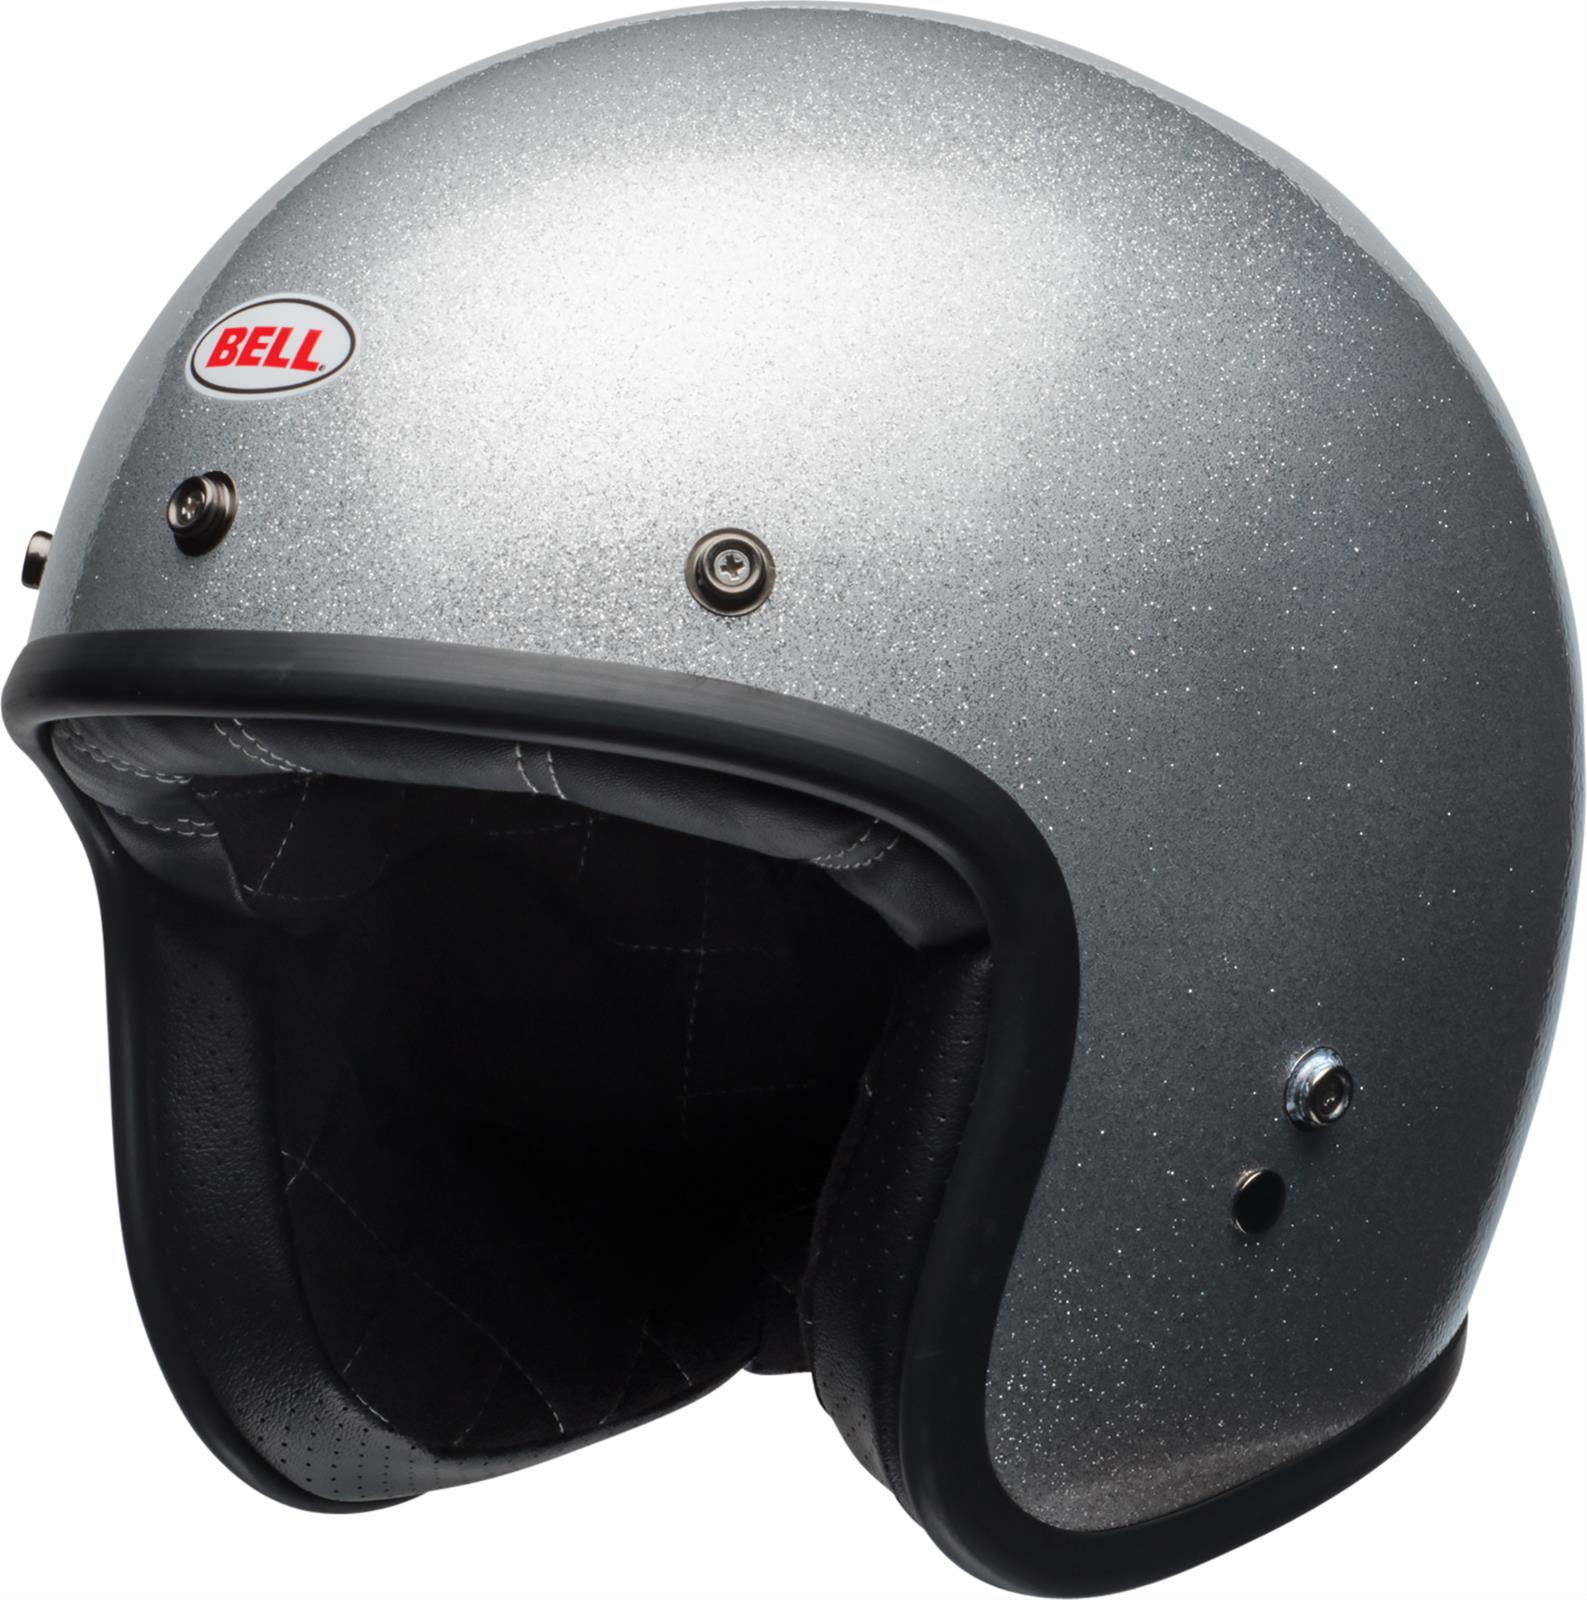 Custom Black Panther Motorcycle Helmet